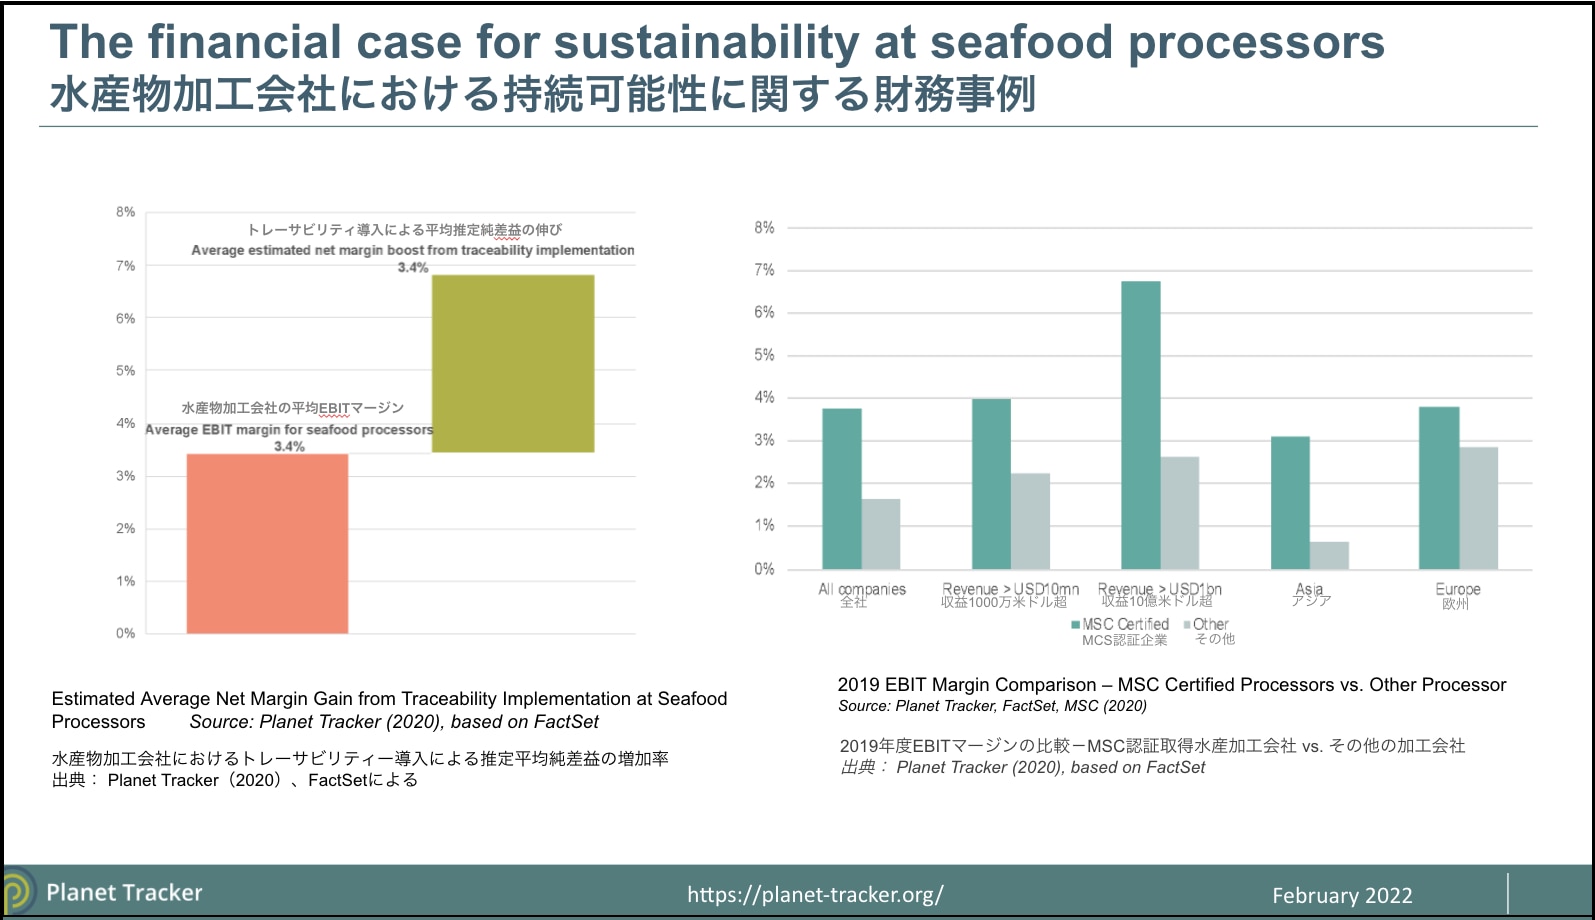 「持続可能な水産業への投融資を実践する」 -連続ウェビナー「海の自然資本とESG投融資」 第3回報告-